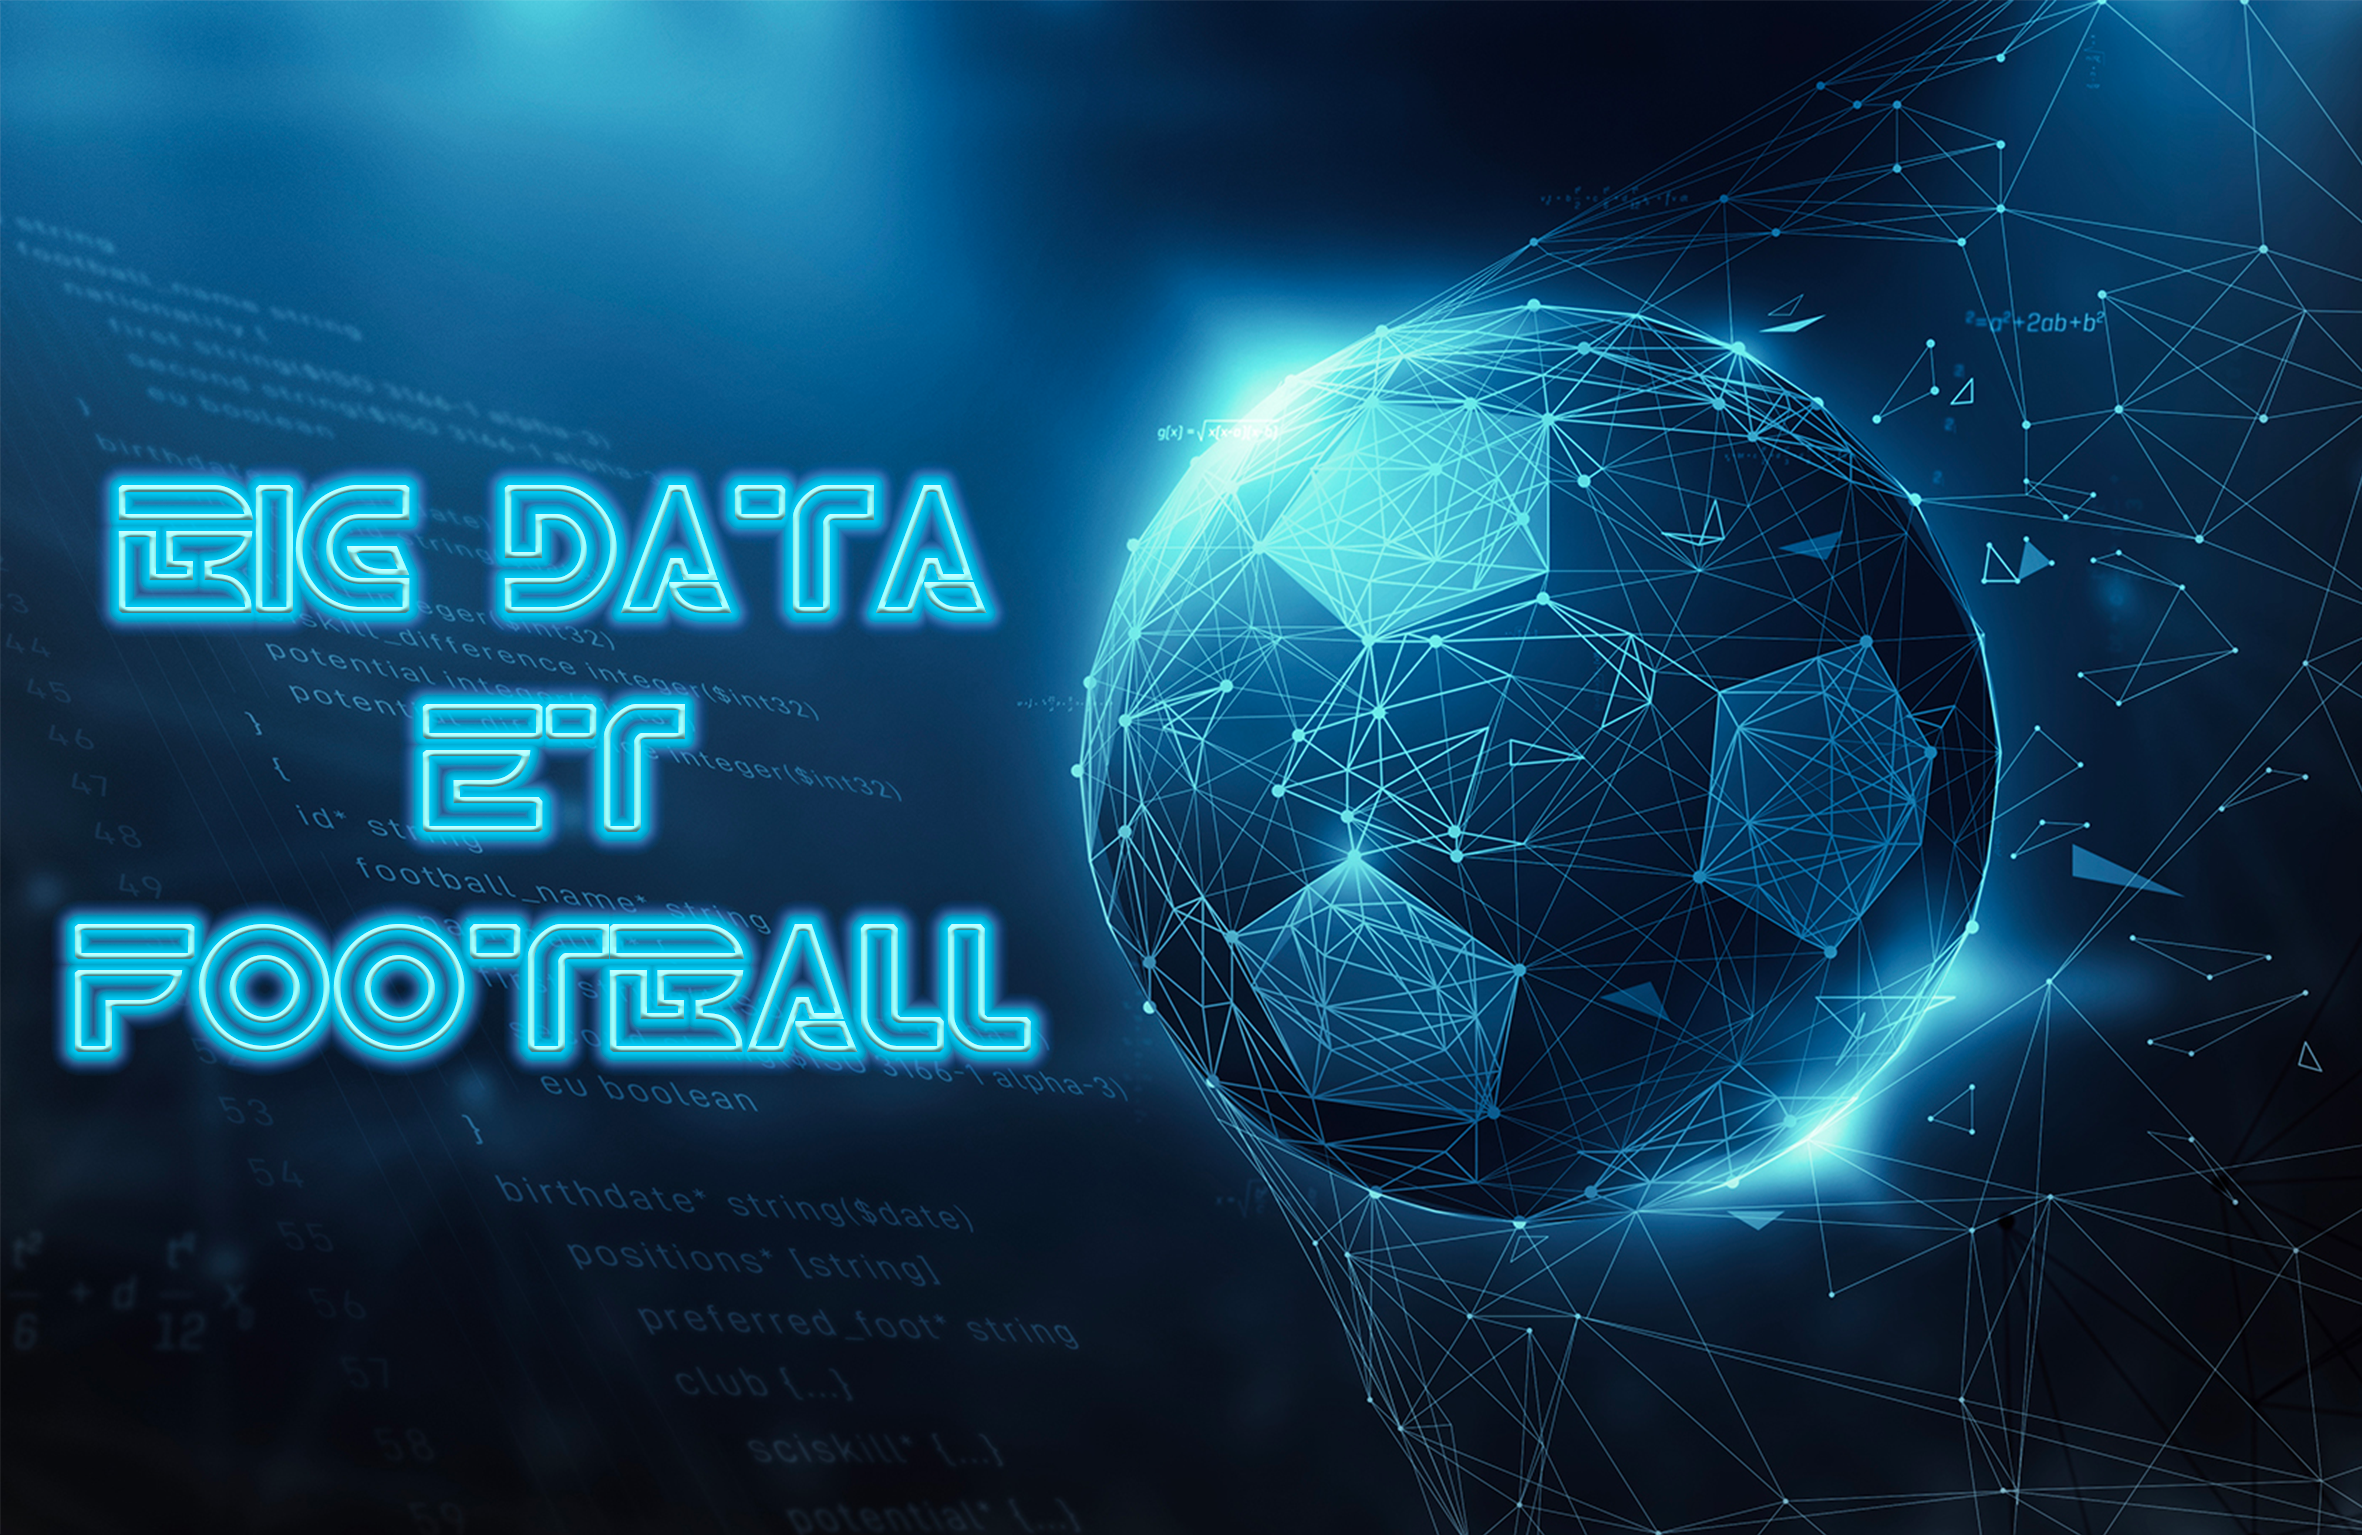 Comment Le Big Data A Revolutionne Le Football Partie 1 2 Toile De Fond